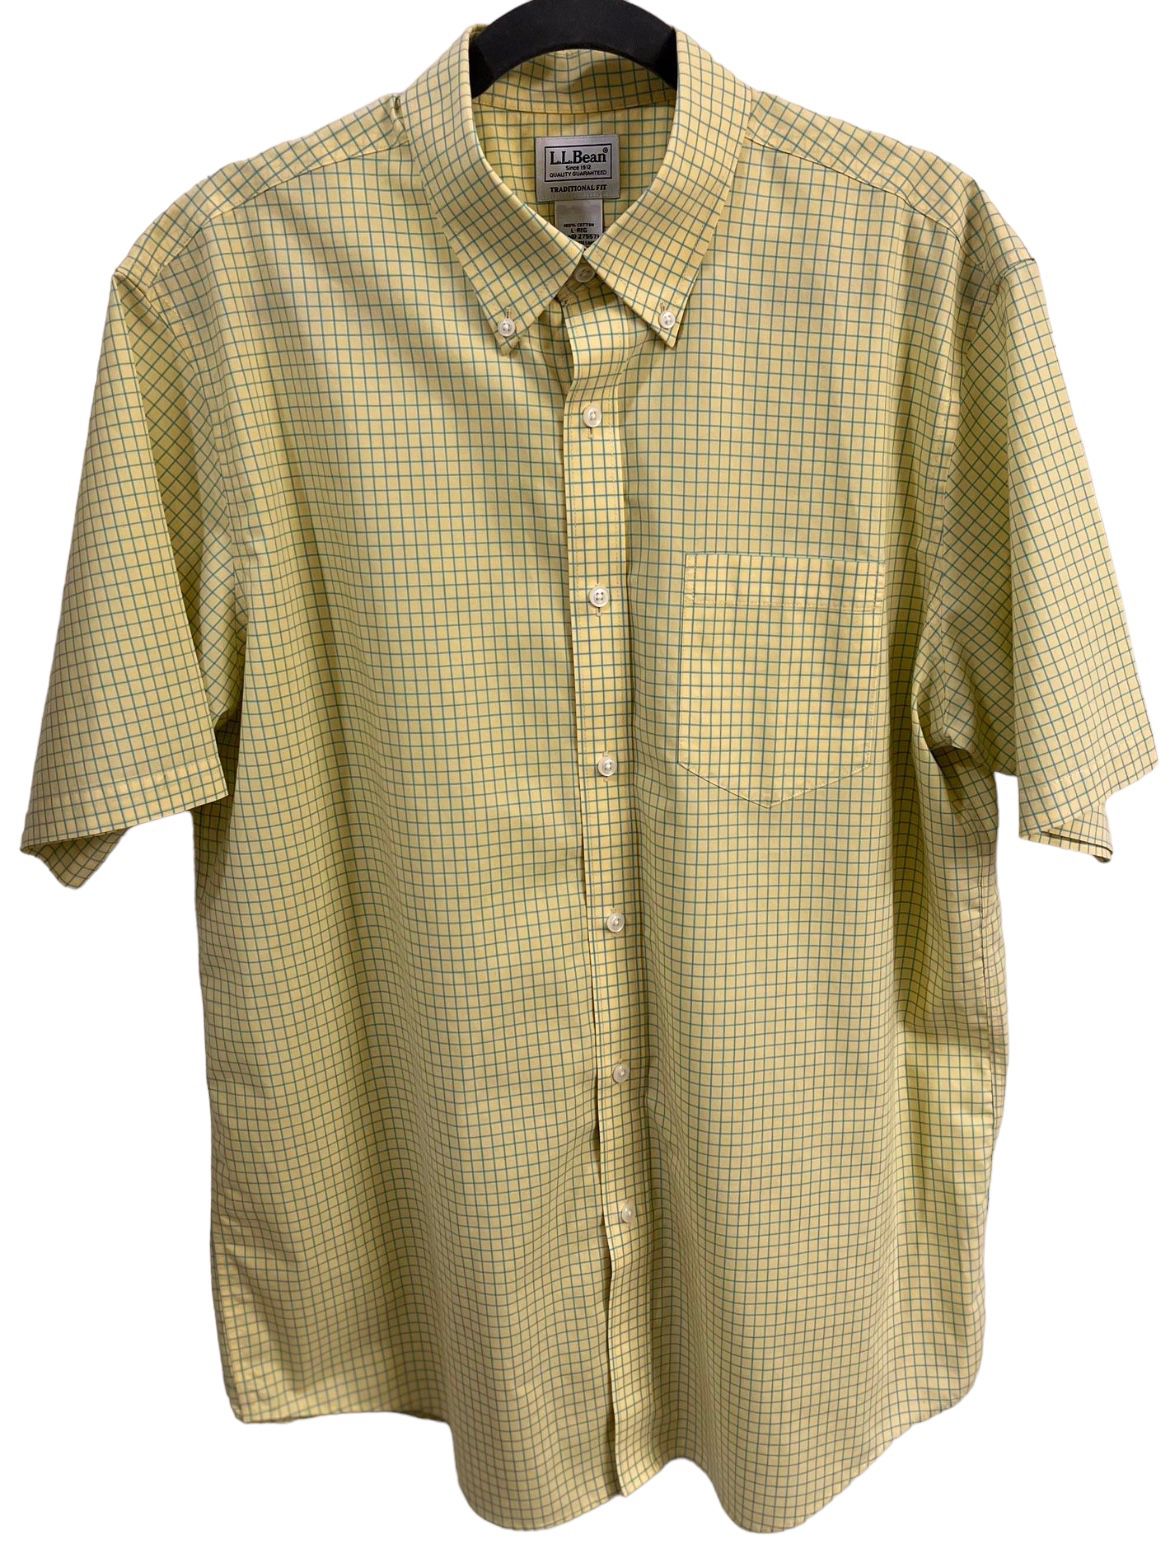 L.L.Bean Men's Short Sleeve Button Up Large Shirt Dress Shirt Business Casual